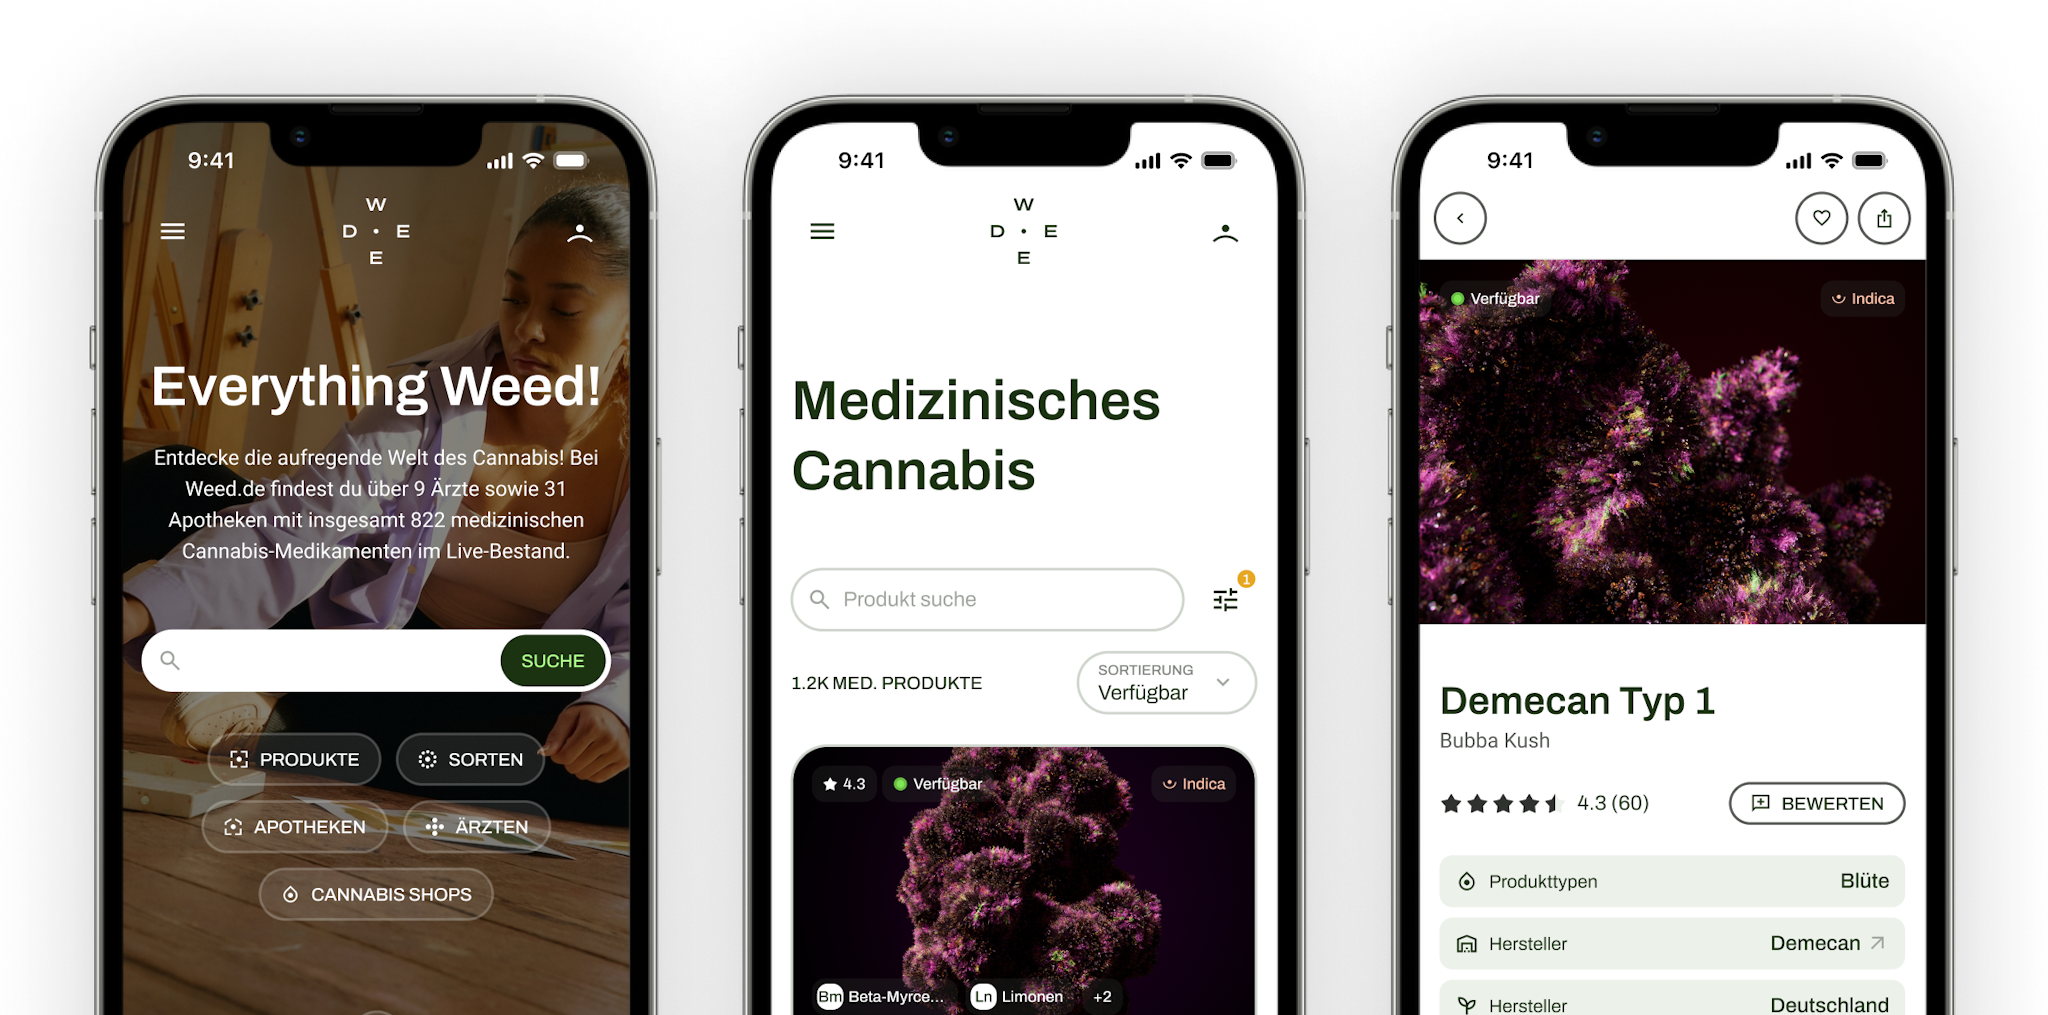 Screenshots der Weed.de-App zur Veranschaulichung der Funktionen